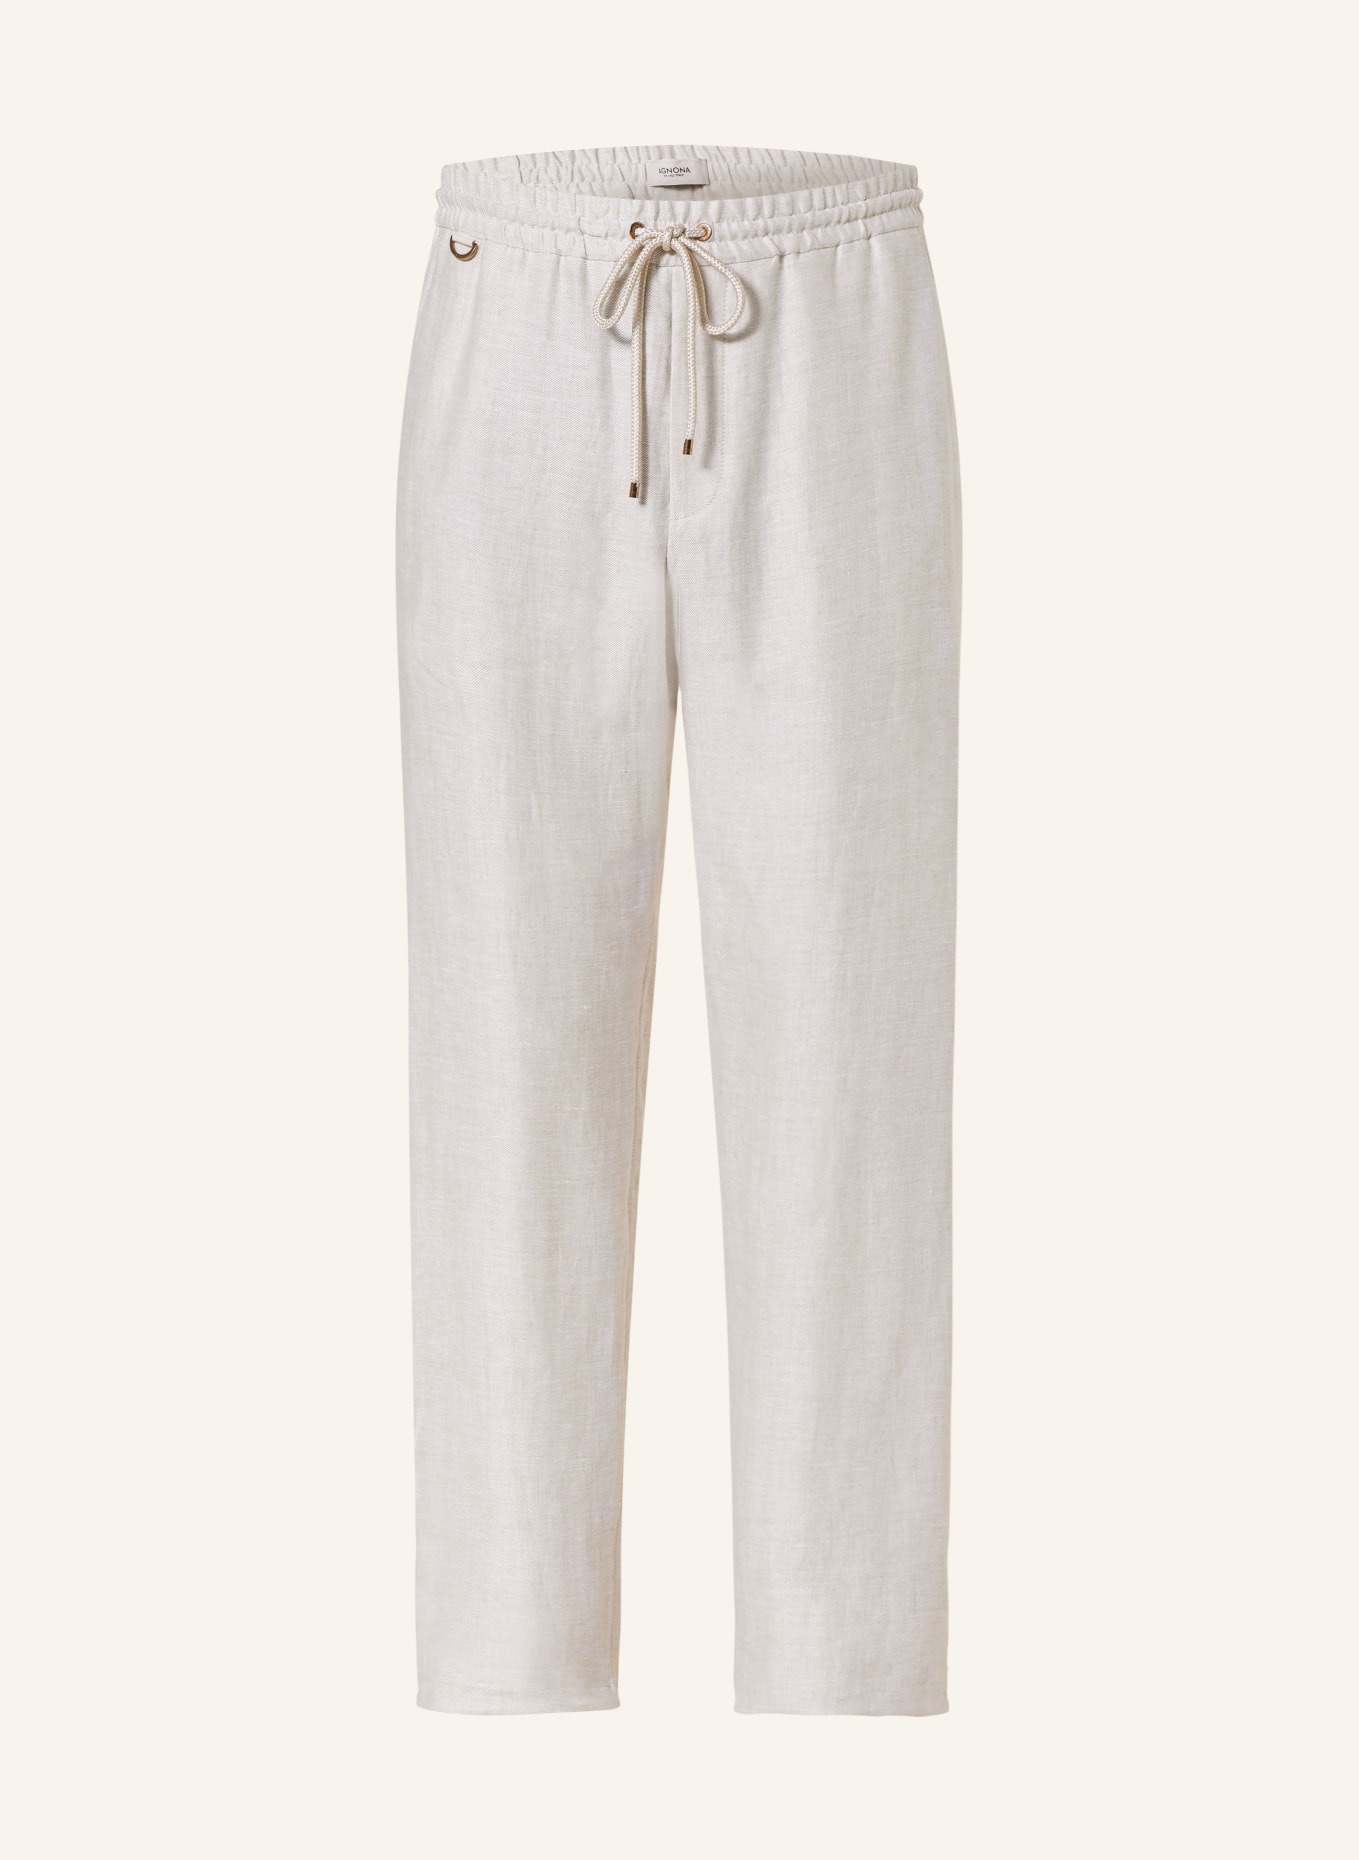 AGNONA Linen pants in jogger style slim fit, Color: BEIGE (Image 1)